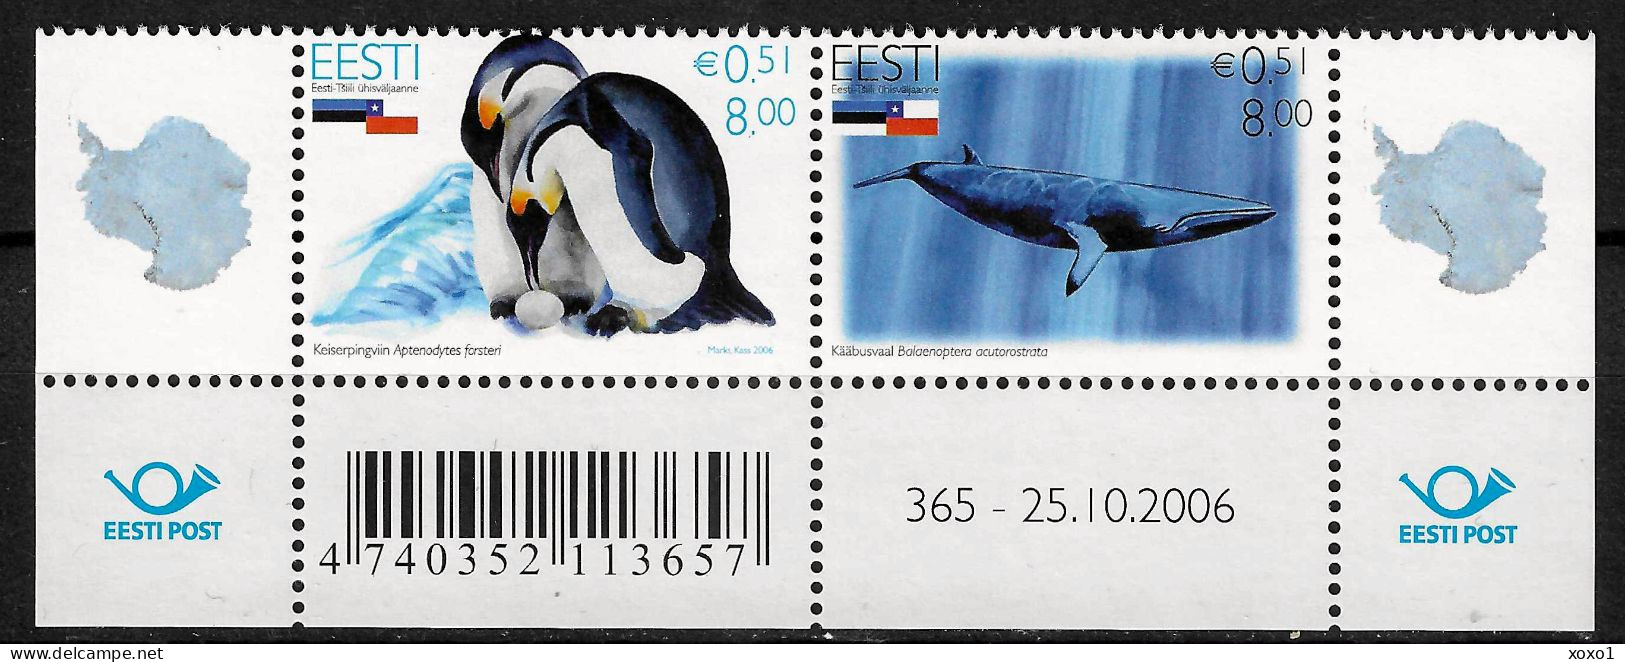 Estonia 2006 MiNr. 568 - 569 Estland Birds Penguins Whales Common Minke Whale 2v MNH**  2.40 € - Antarktischen Tierwelt